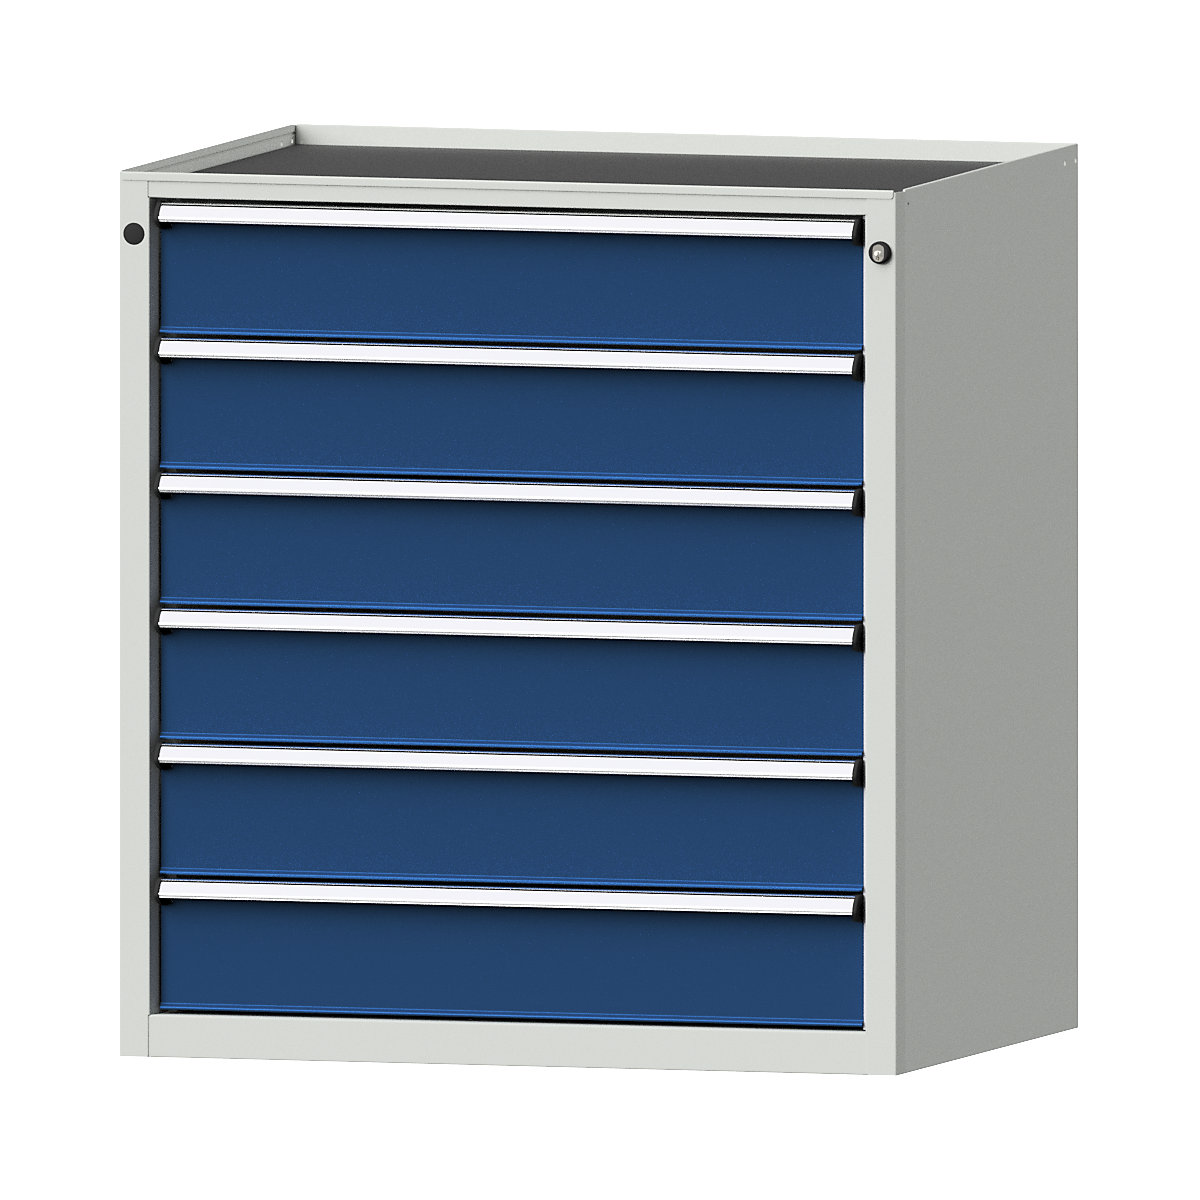 Szafa z szufladami – ANKE, szer. x głęb. 910 x 675 mm, 6 szuflad, wys. 980 mm, front niebieski gencjanowy-5